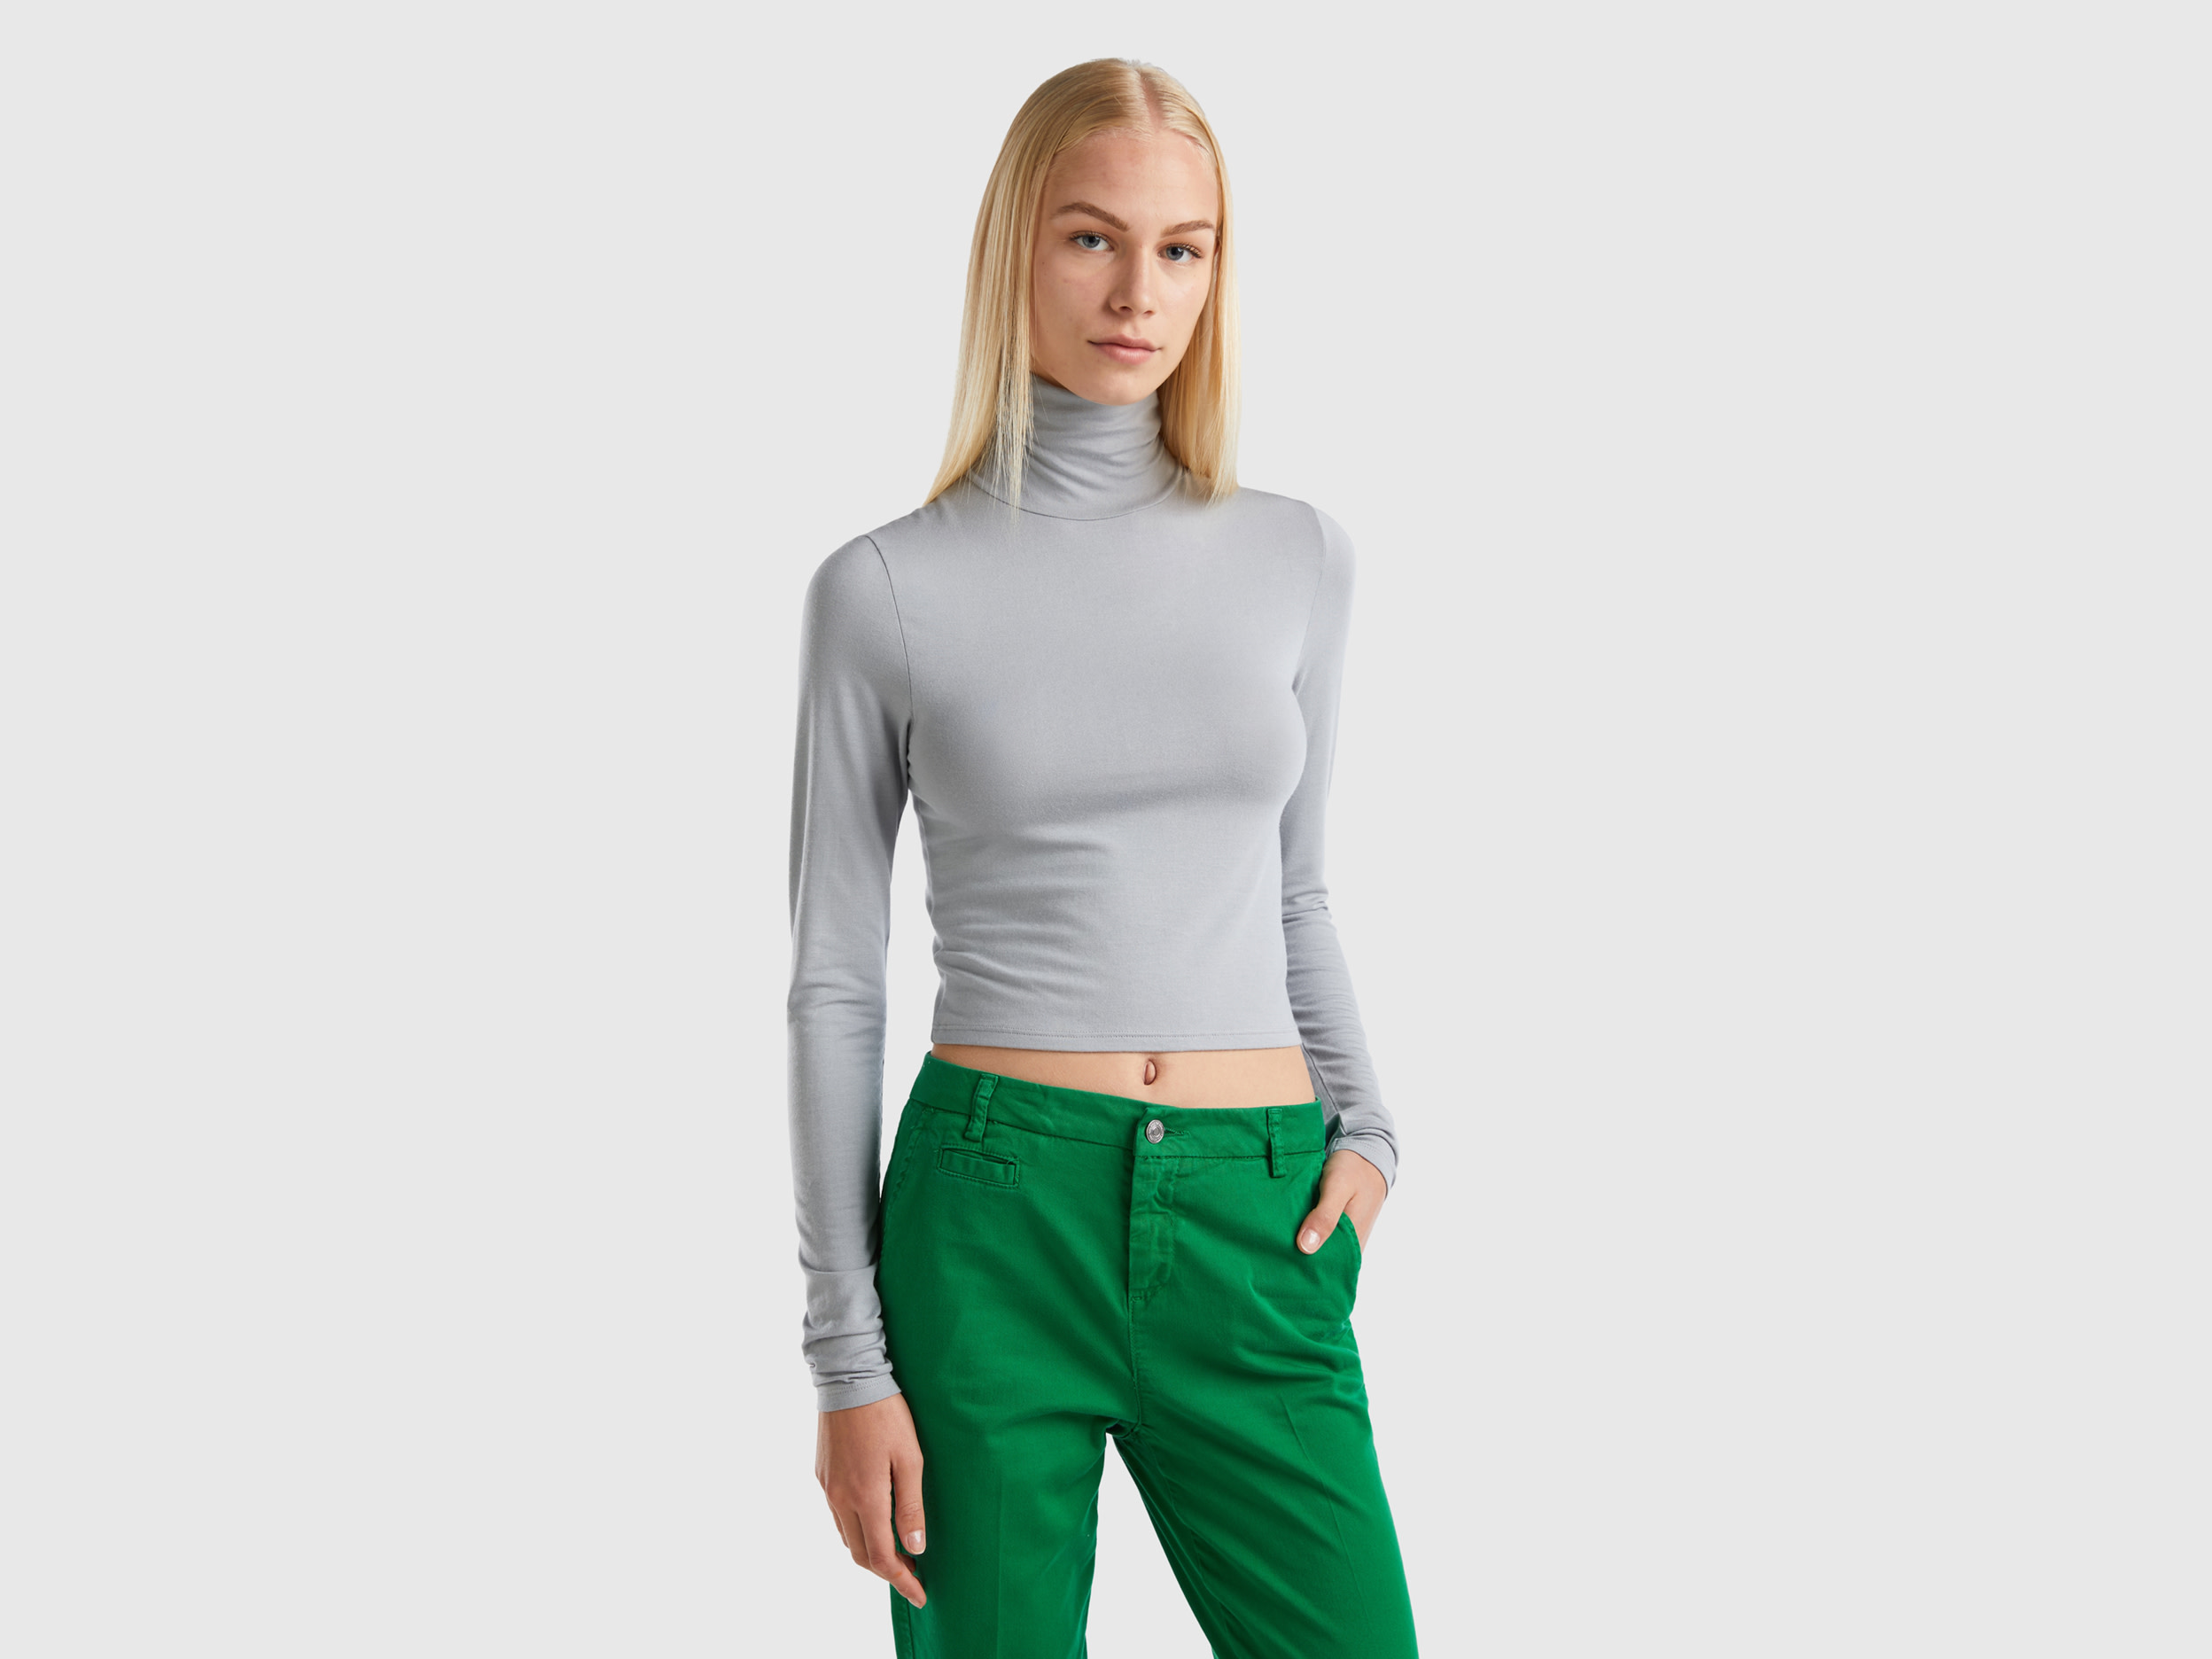 Benetton, T-shirt With High Neck, size XL, Light Gray, Women